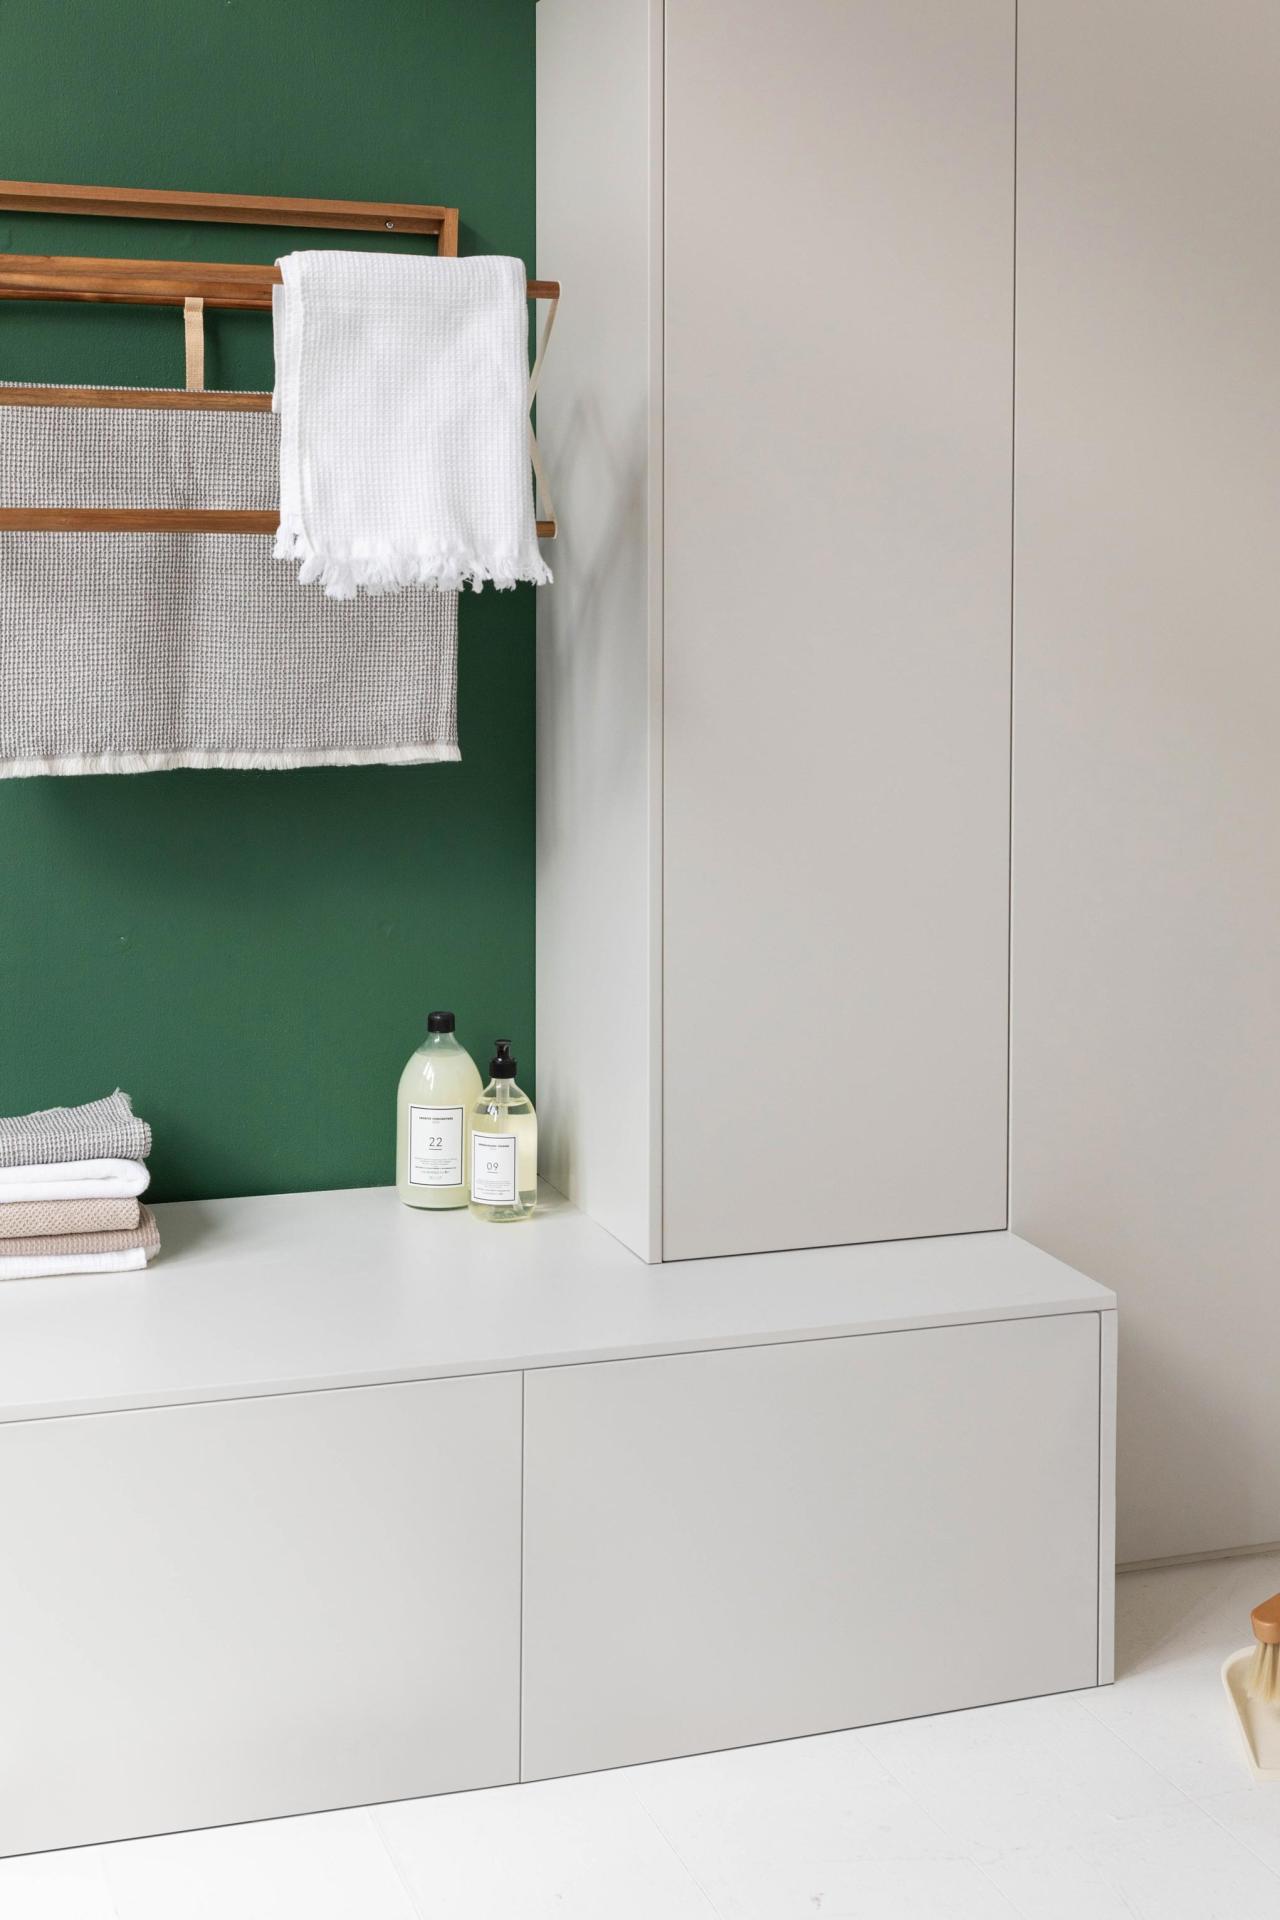 A linen cupboard in beige 06 - galet - Shopping list